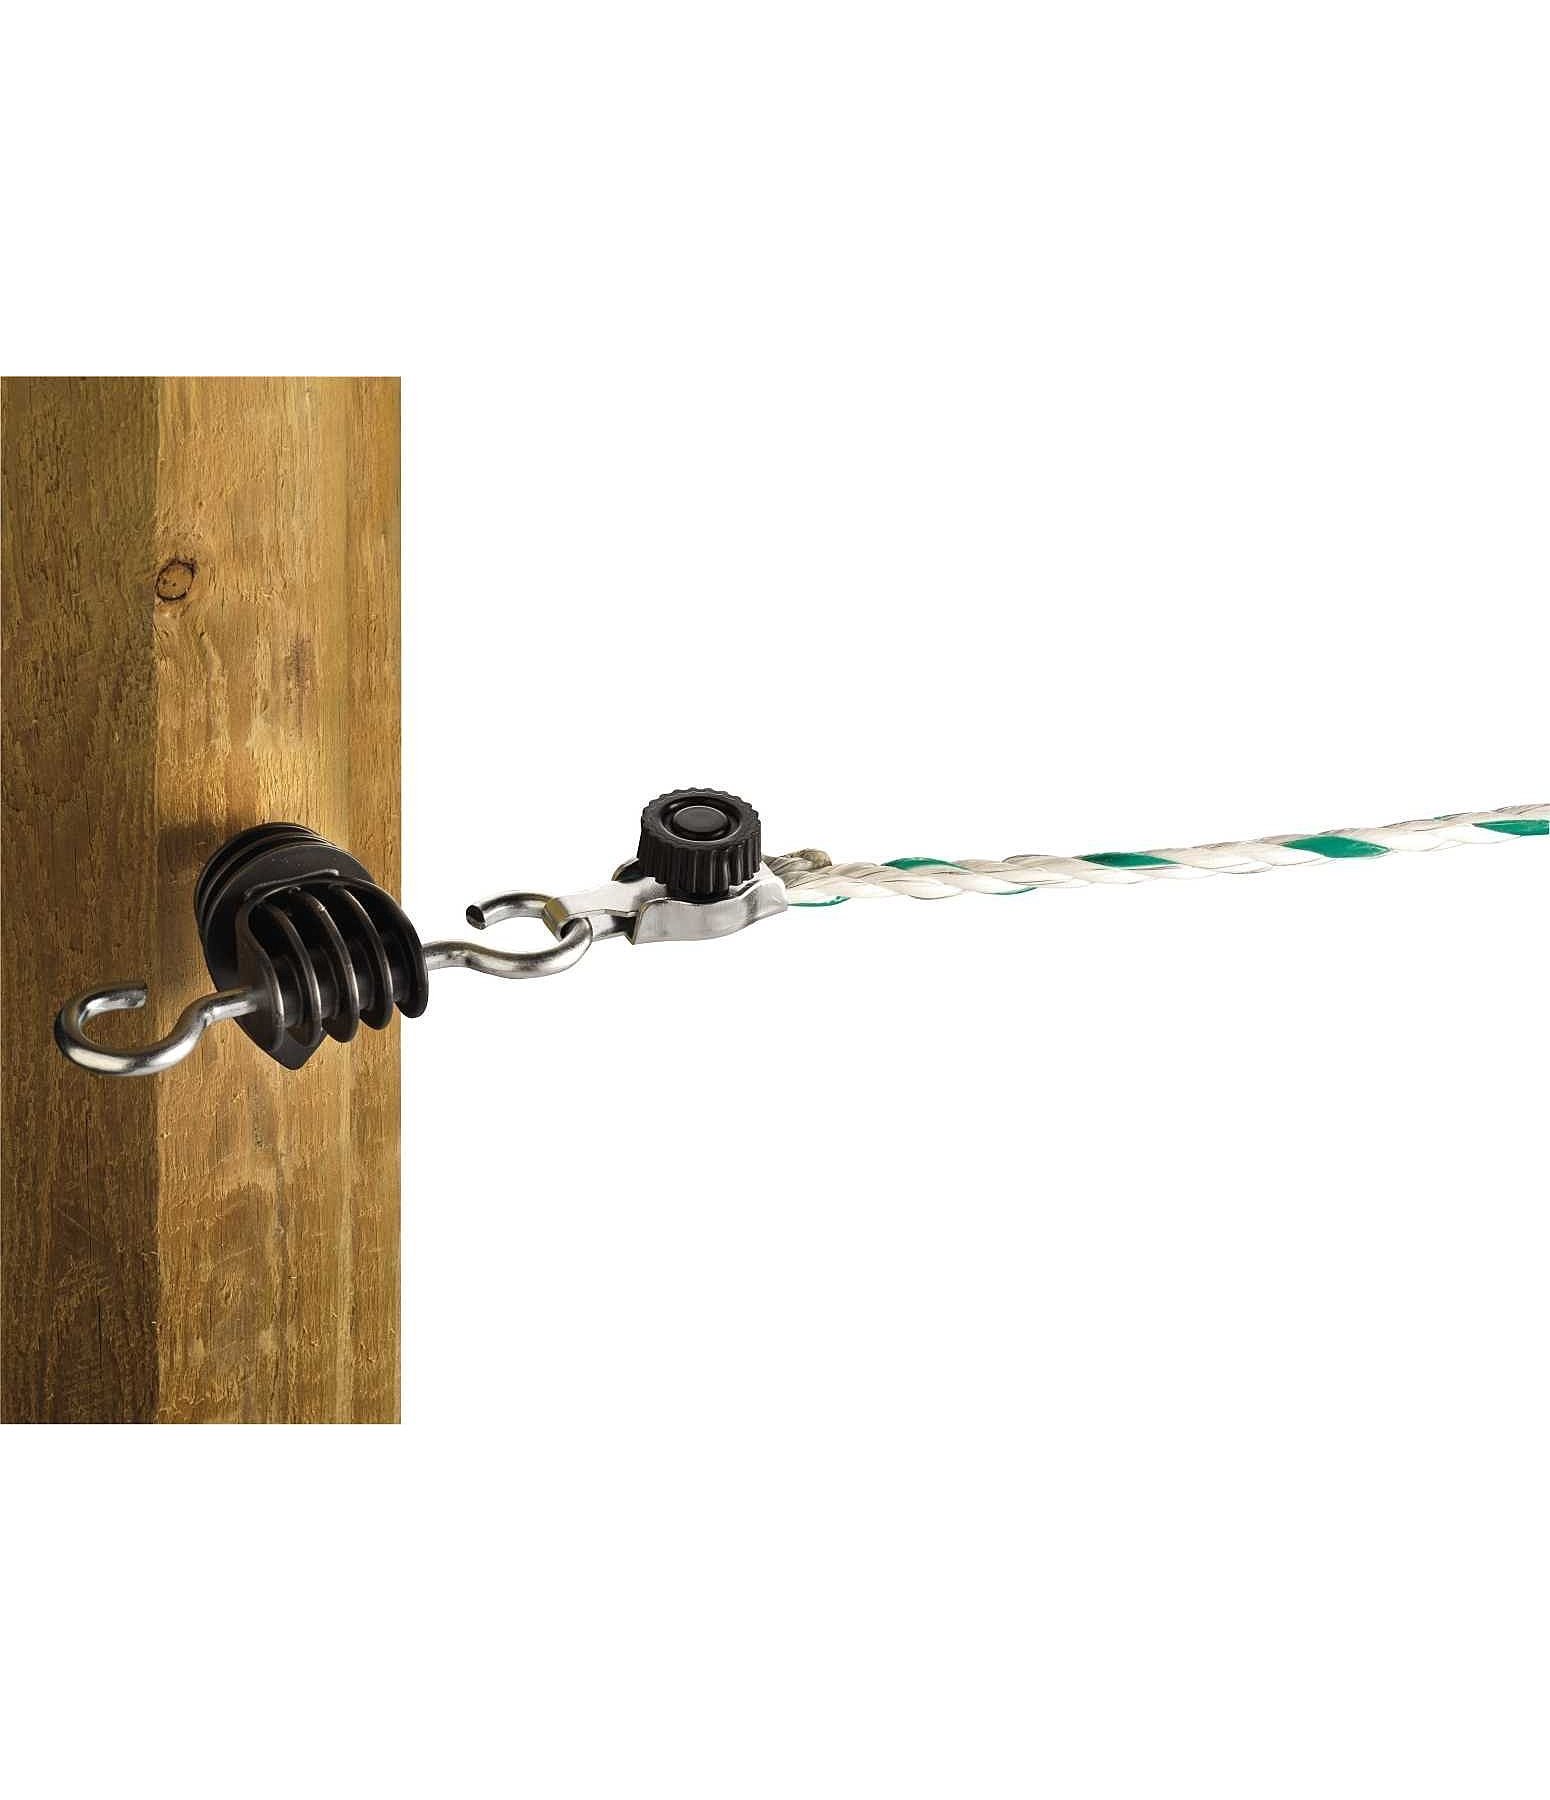 Quick Connectors for Ropes 4 pcs.